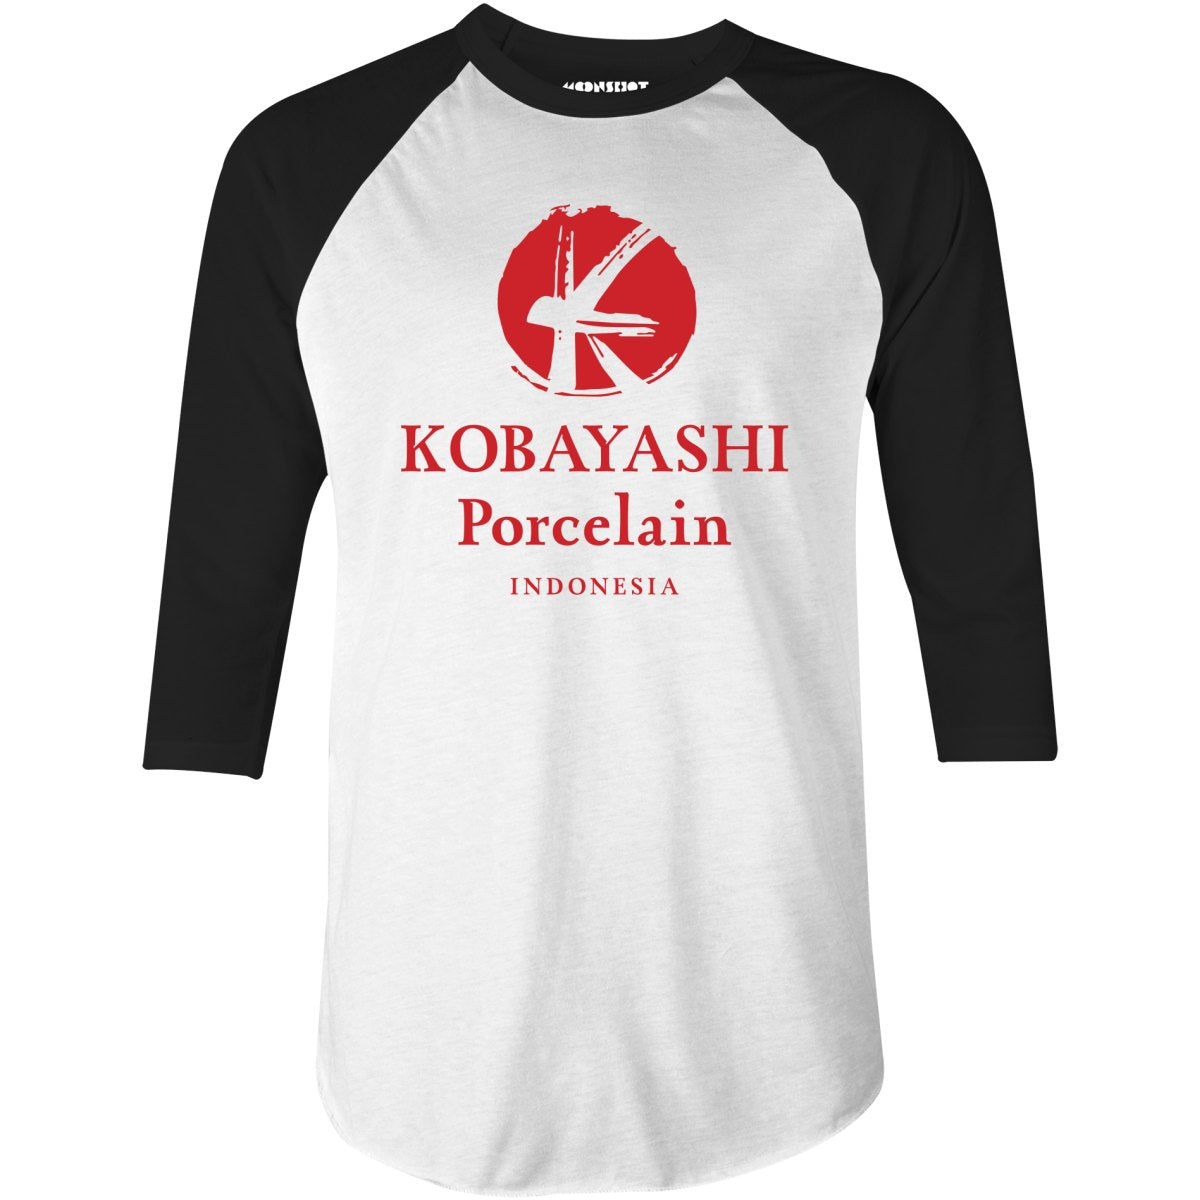 Kobayashi Porcelain - 3/4 Sleeve Raglan T-Shirt